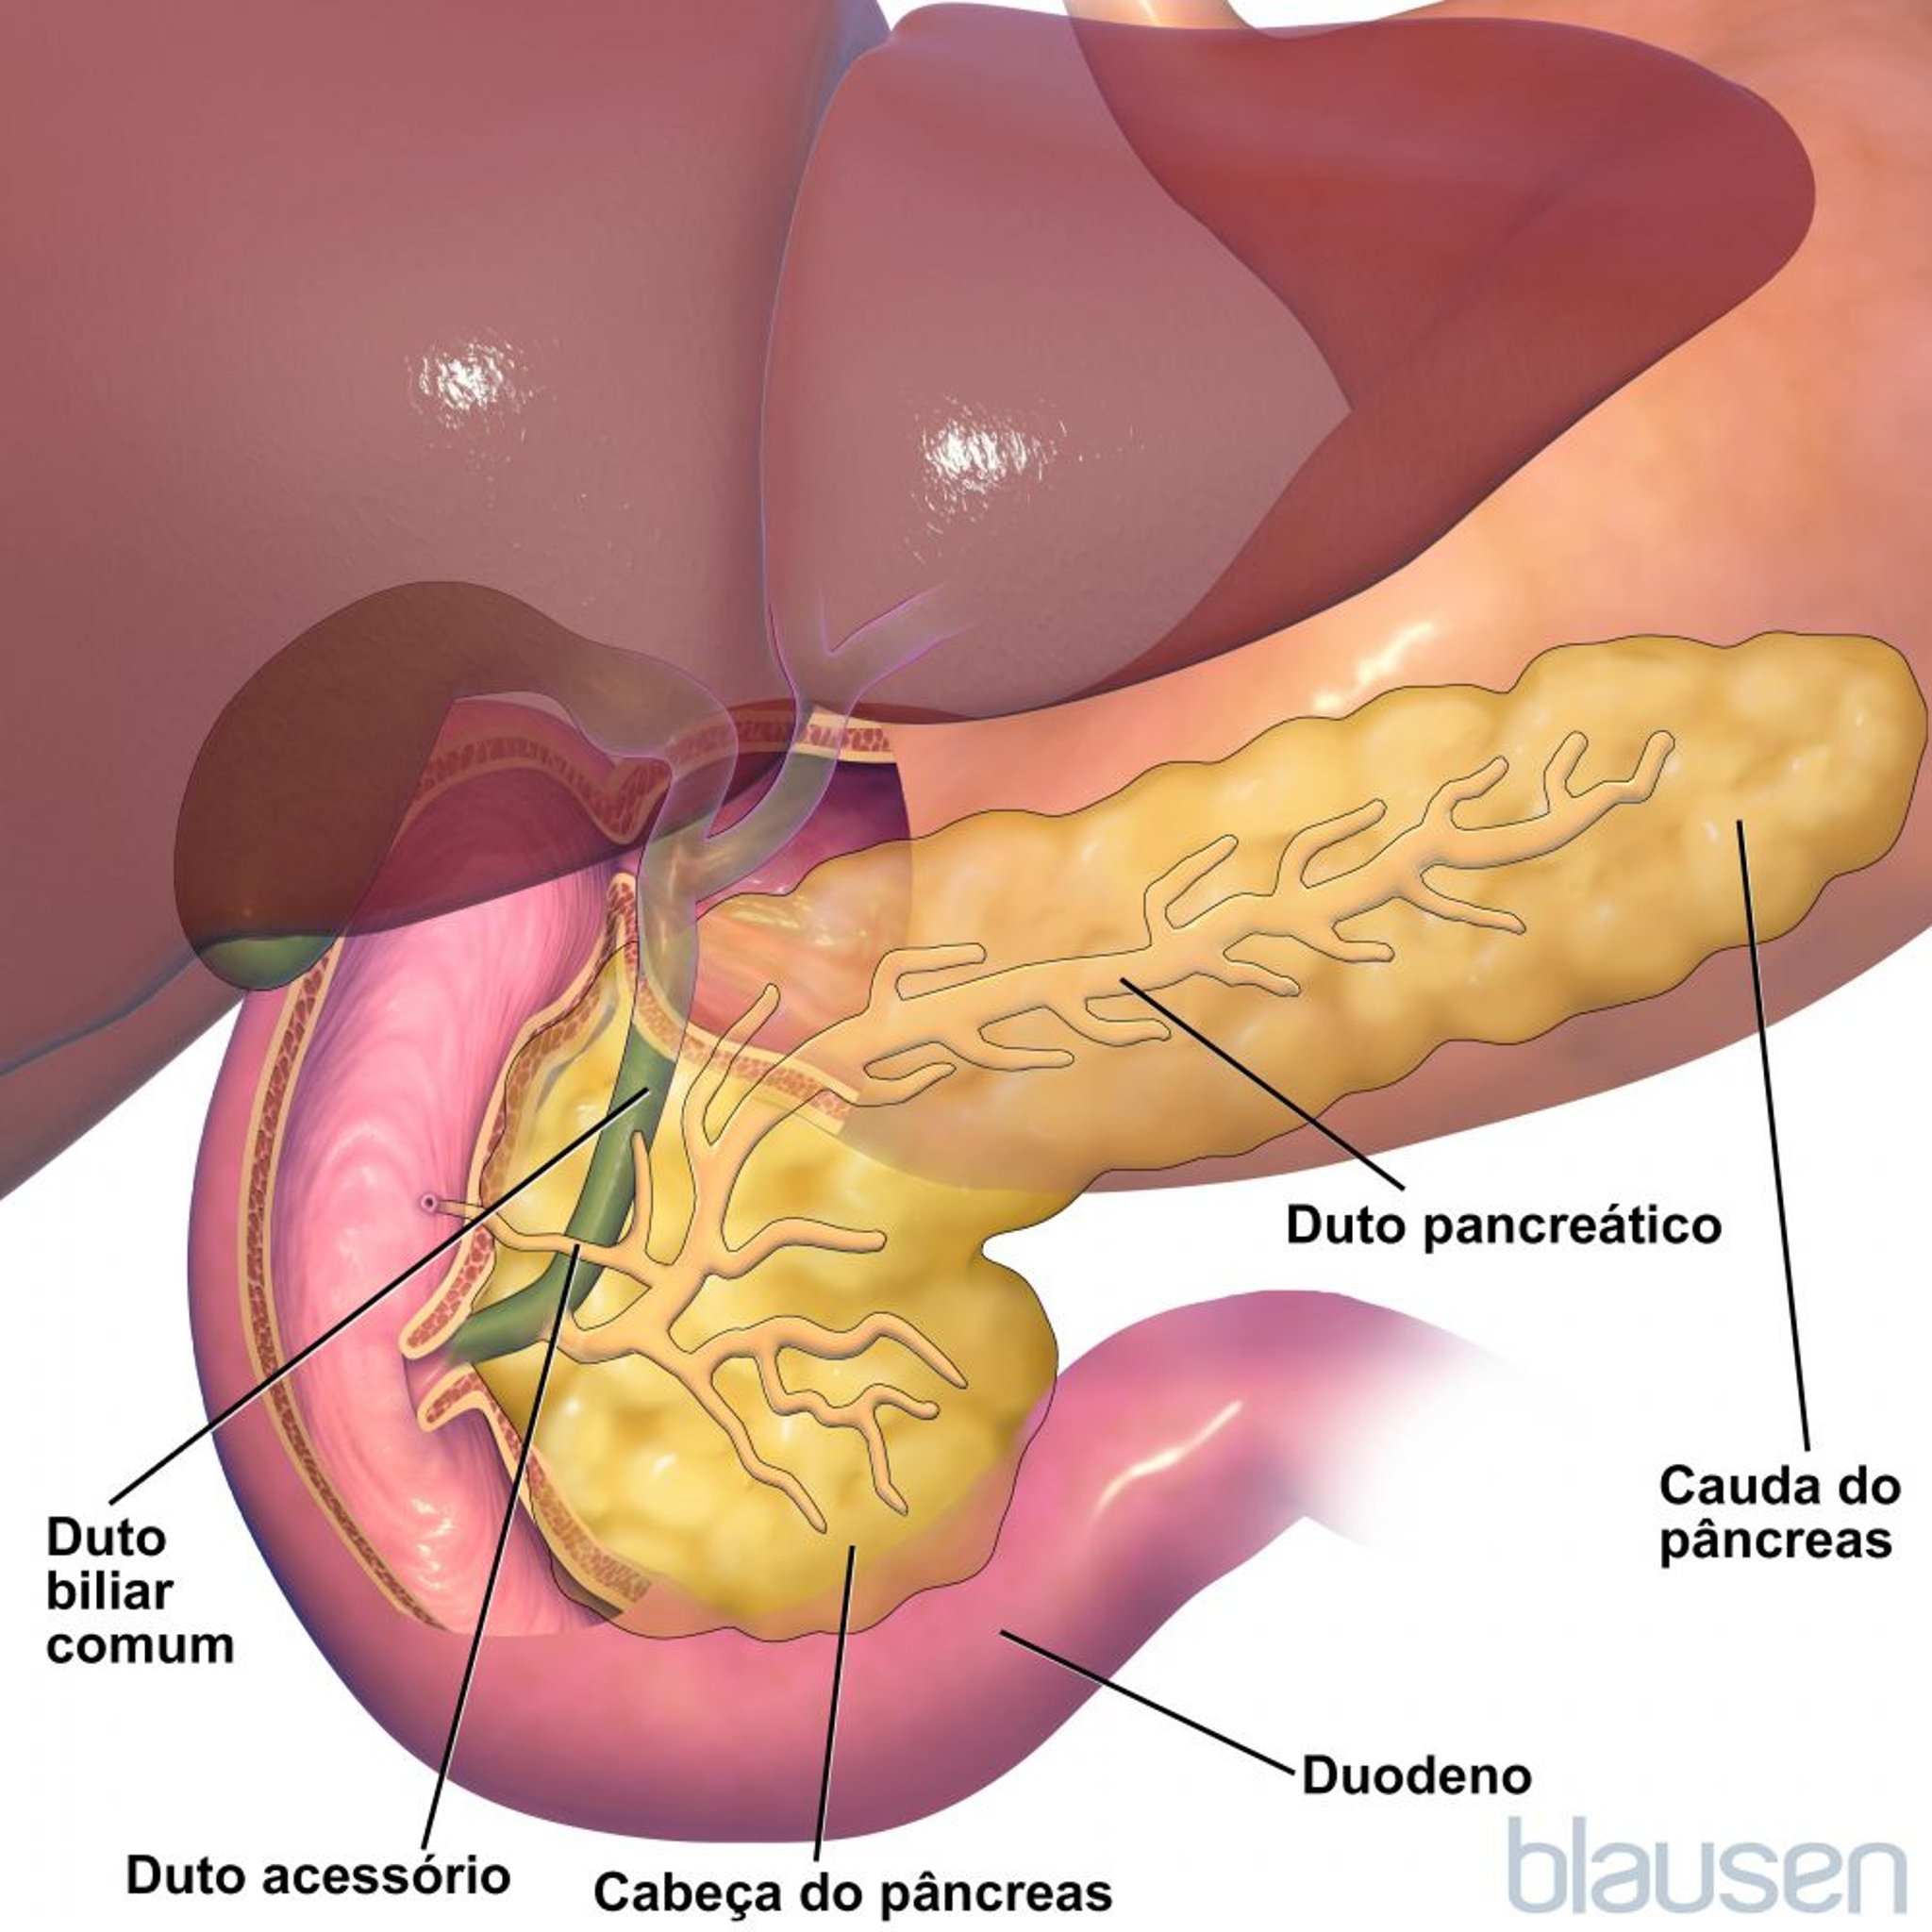 Anatomia do pâncreas